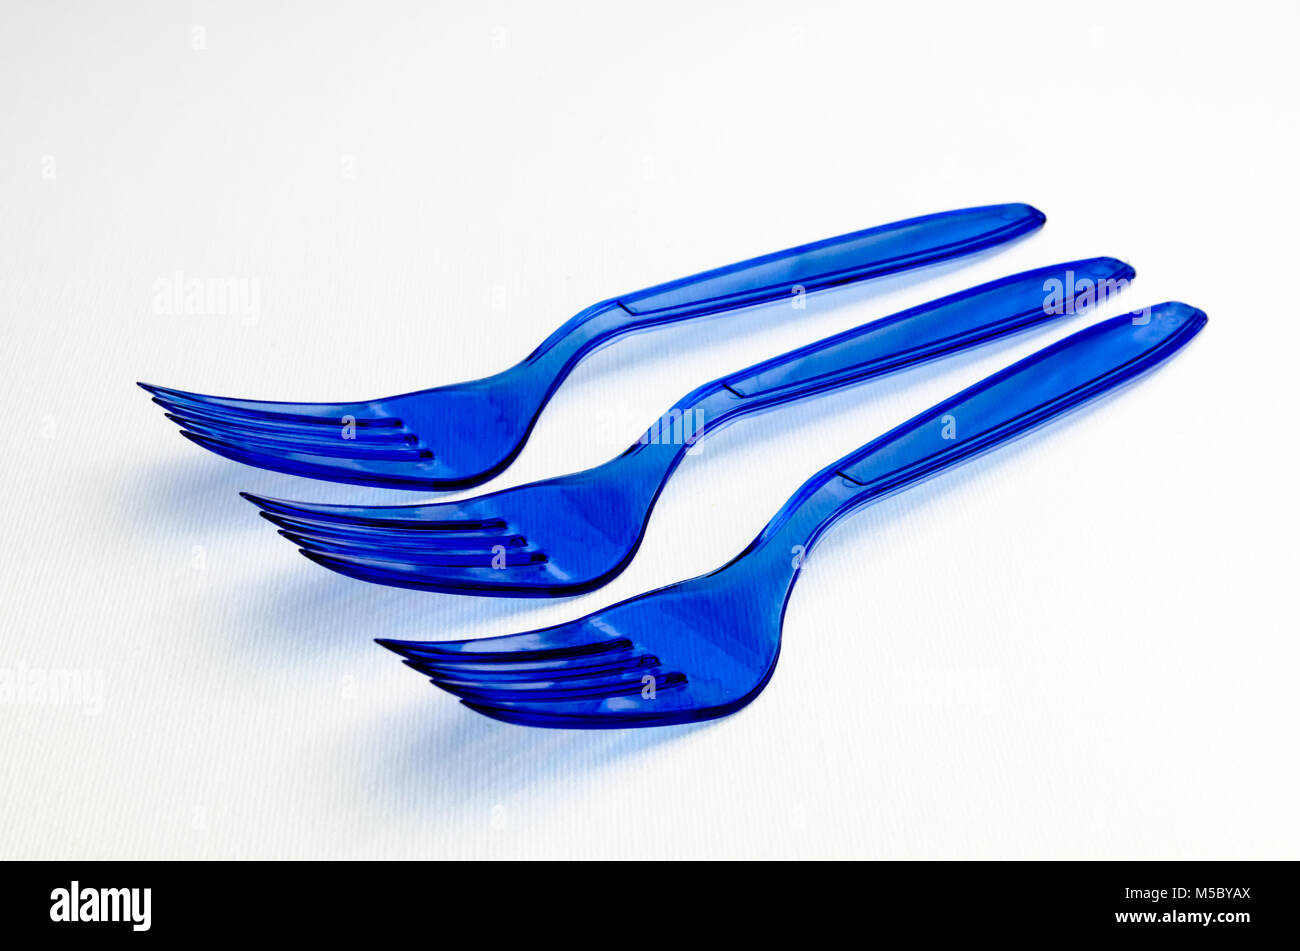 Une photographie de fourchettes en plastique bleu Banque D'Images